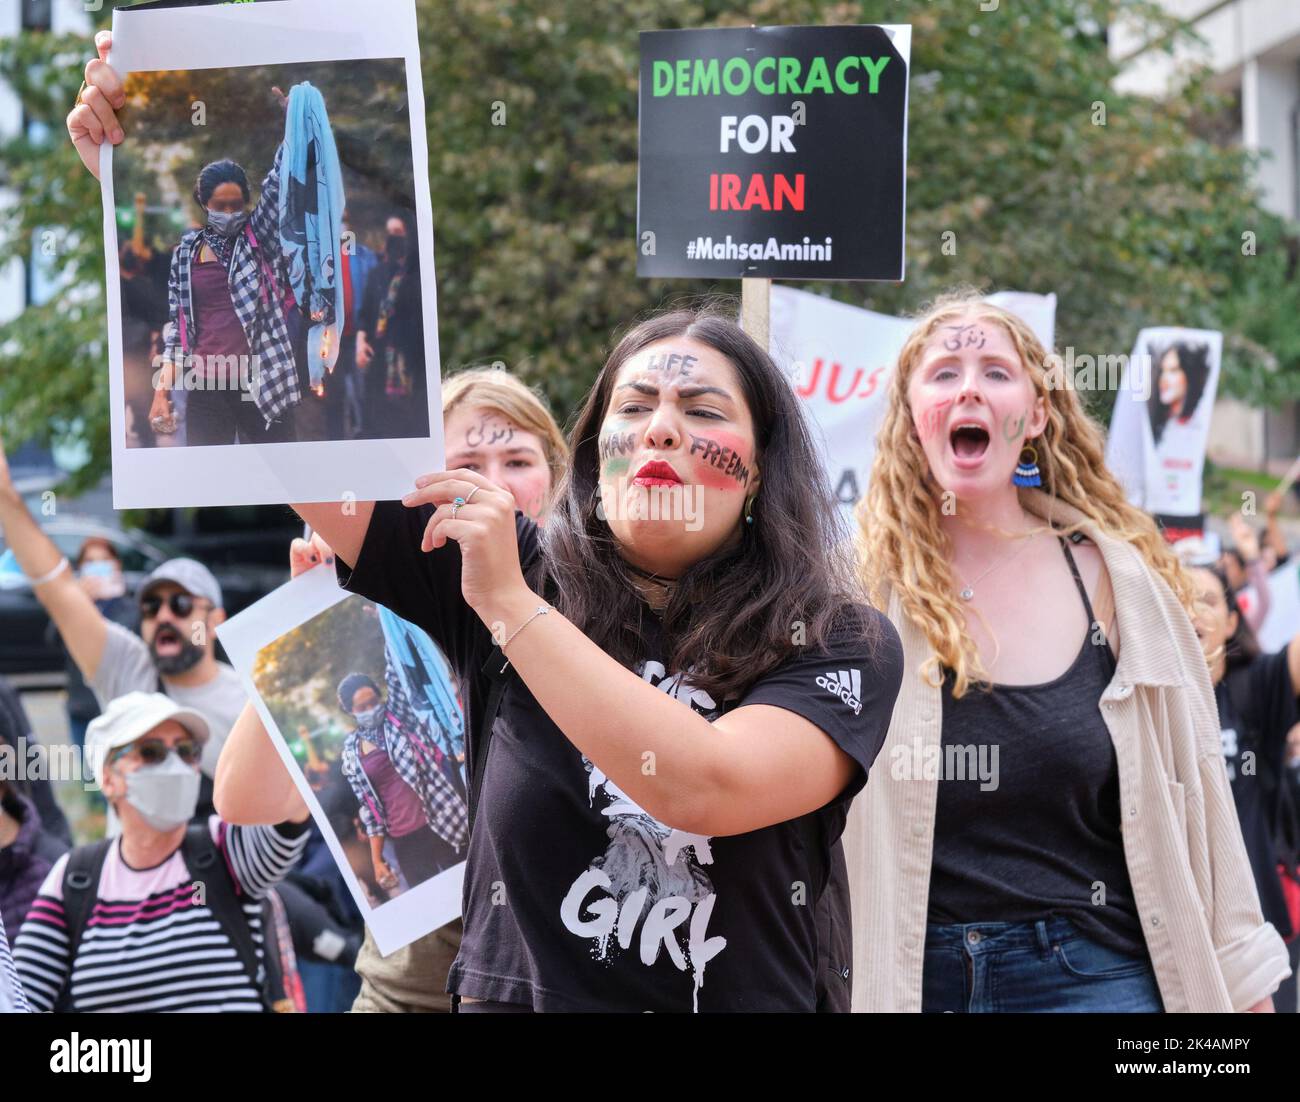 Halifax, Nouvelle-Écosse, Canada. 1 octobre 2022. Des centaines de personnes ont défilé dans un rassemblement pour la liberté en Iran et ont exigé la justice pour la mort de Mahsa Amini qui a été tué alors qu'il était en garde à vue. Le rassemblement sous la bannière « liberté de la vie des femmes » a exigé que le Canada soit la voix des femmes iraniennes réduites au silence dans leur propre pays par le régime actuel et qu'elles appuient le droit à la démocratie et à la liberté des Iraniens. Credit: Meanderingemu /Alamy Live News Banque D'Images